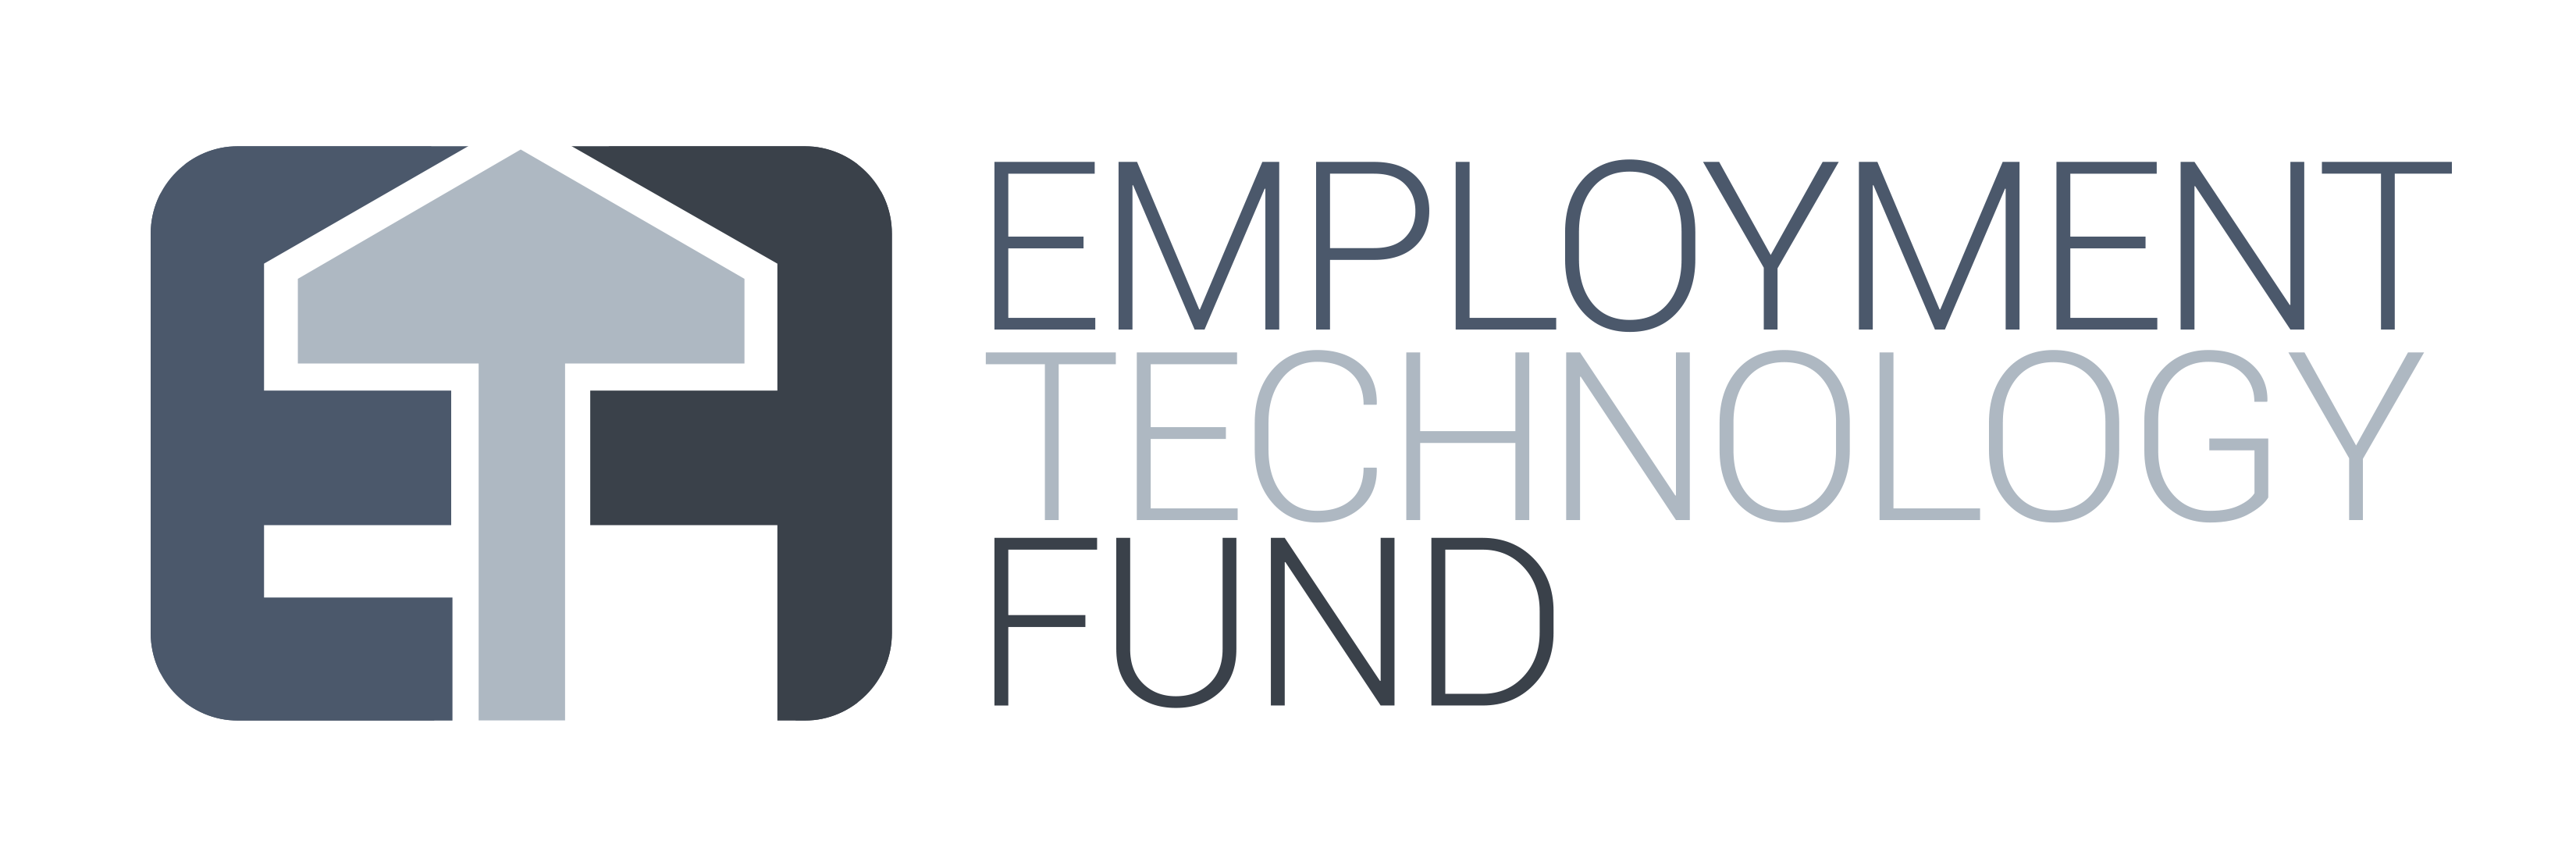 Employment Technology Fund